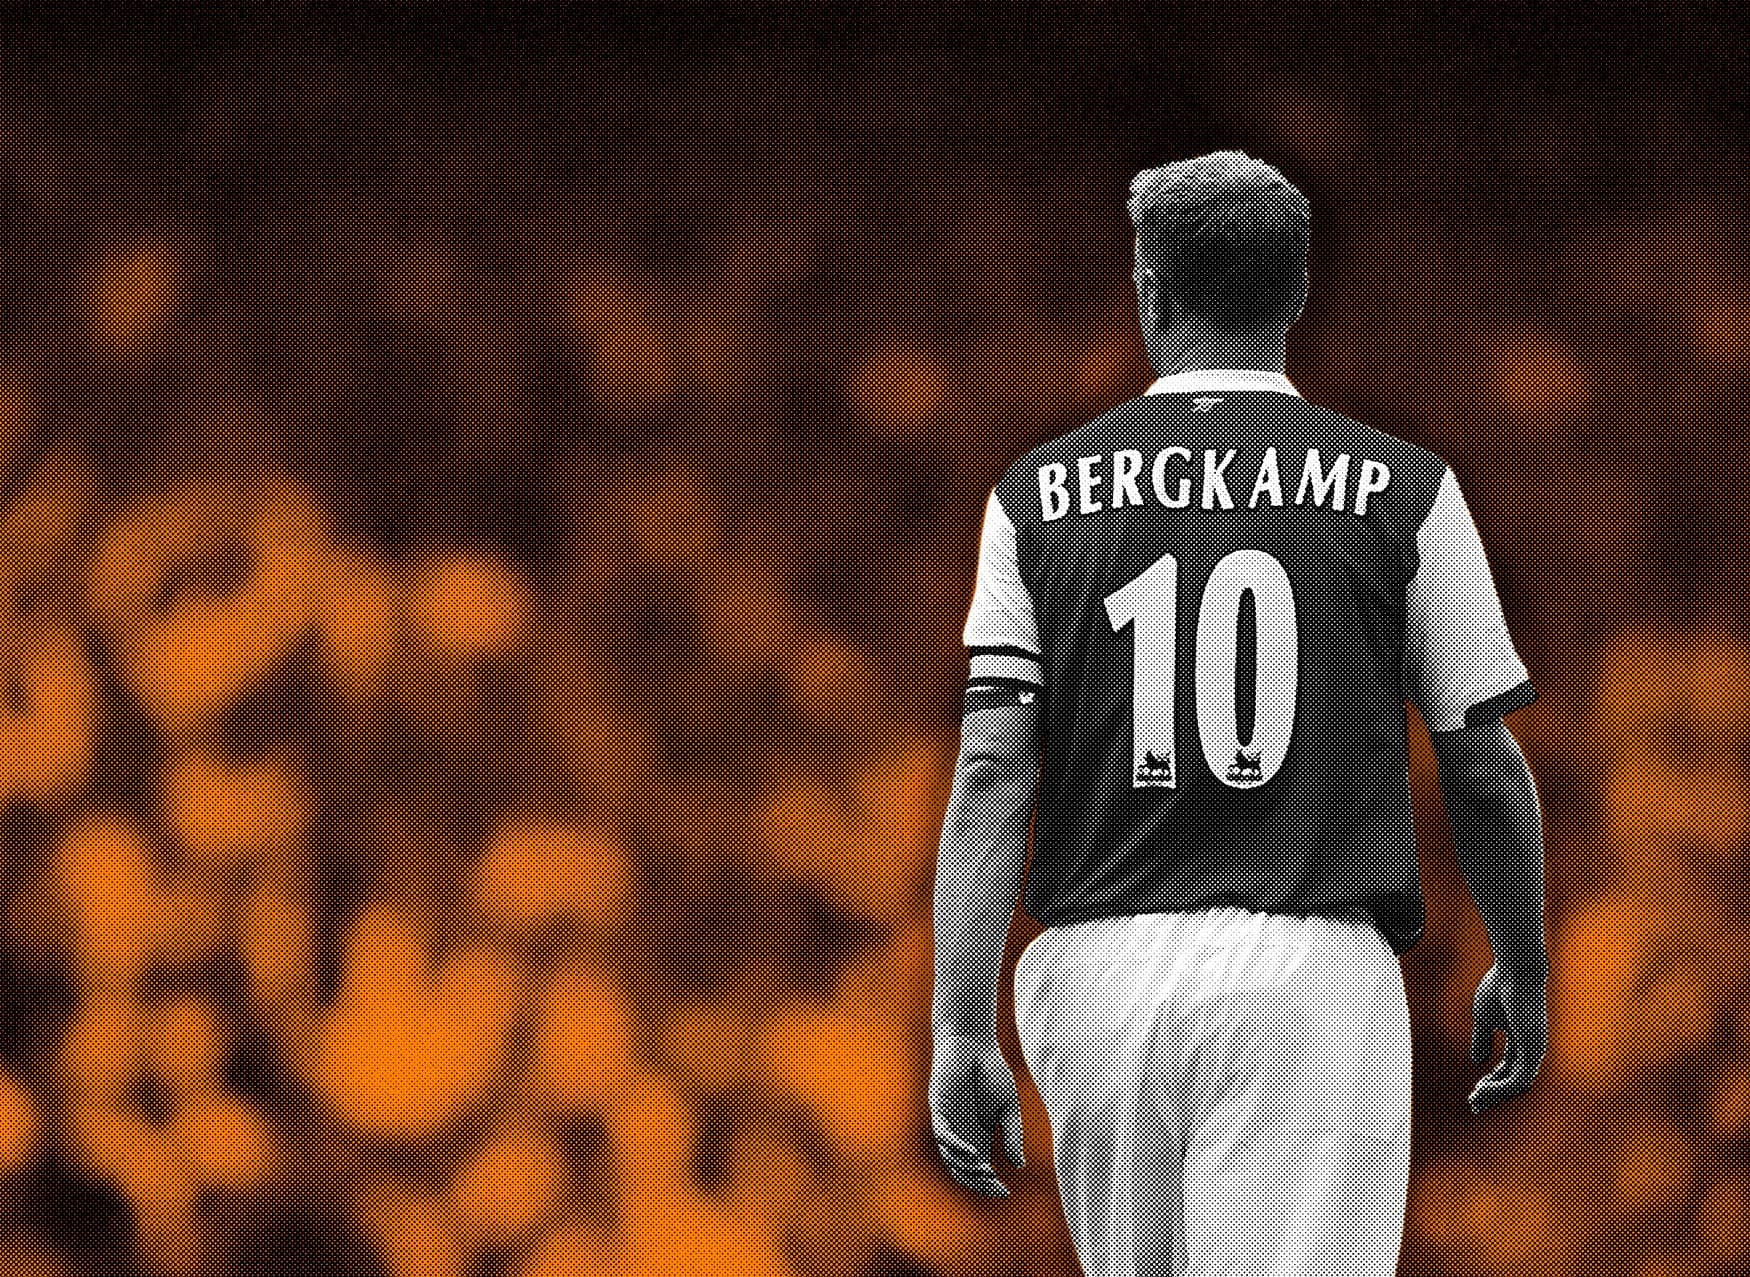 Dennis Bergkamp dejó una impronta inigualable en el fútbol, especialmente en Highbury, donde fue acogido como un hijo cuya obra balompédica será recordada por siempre: «Siento que estos jugadores y esta afición son una sola y misma familia»./ PA Images